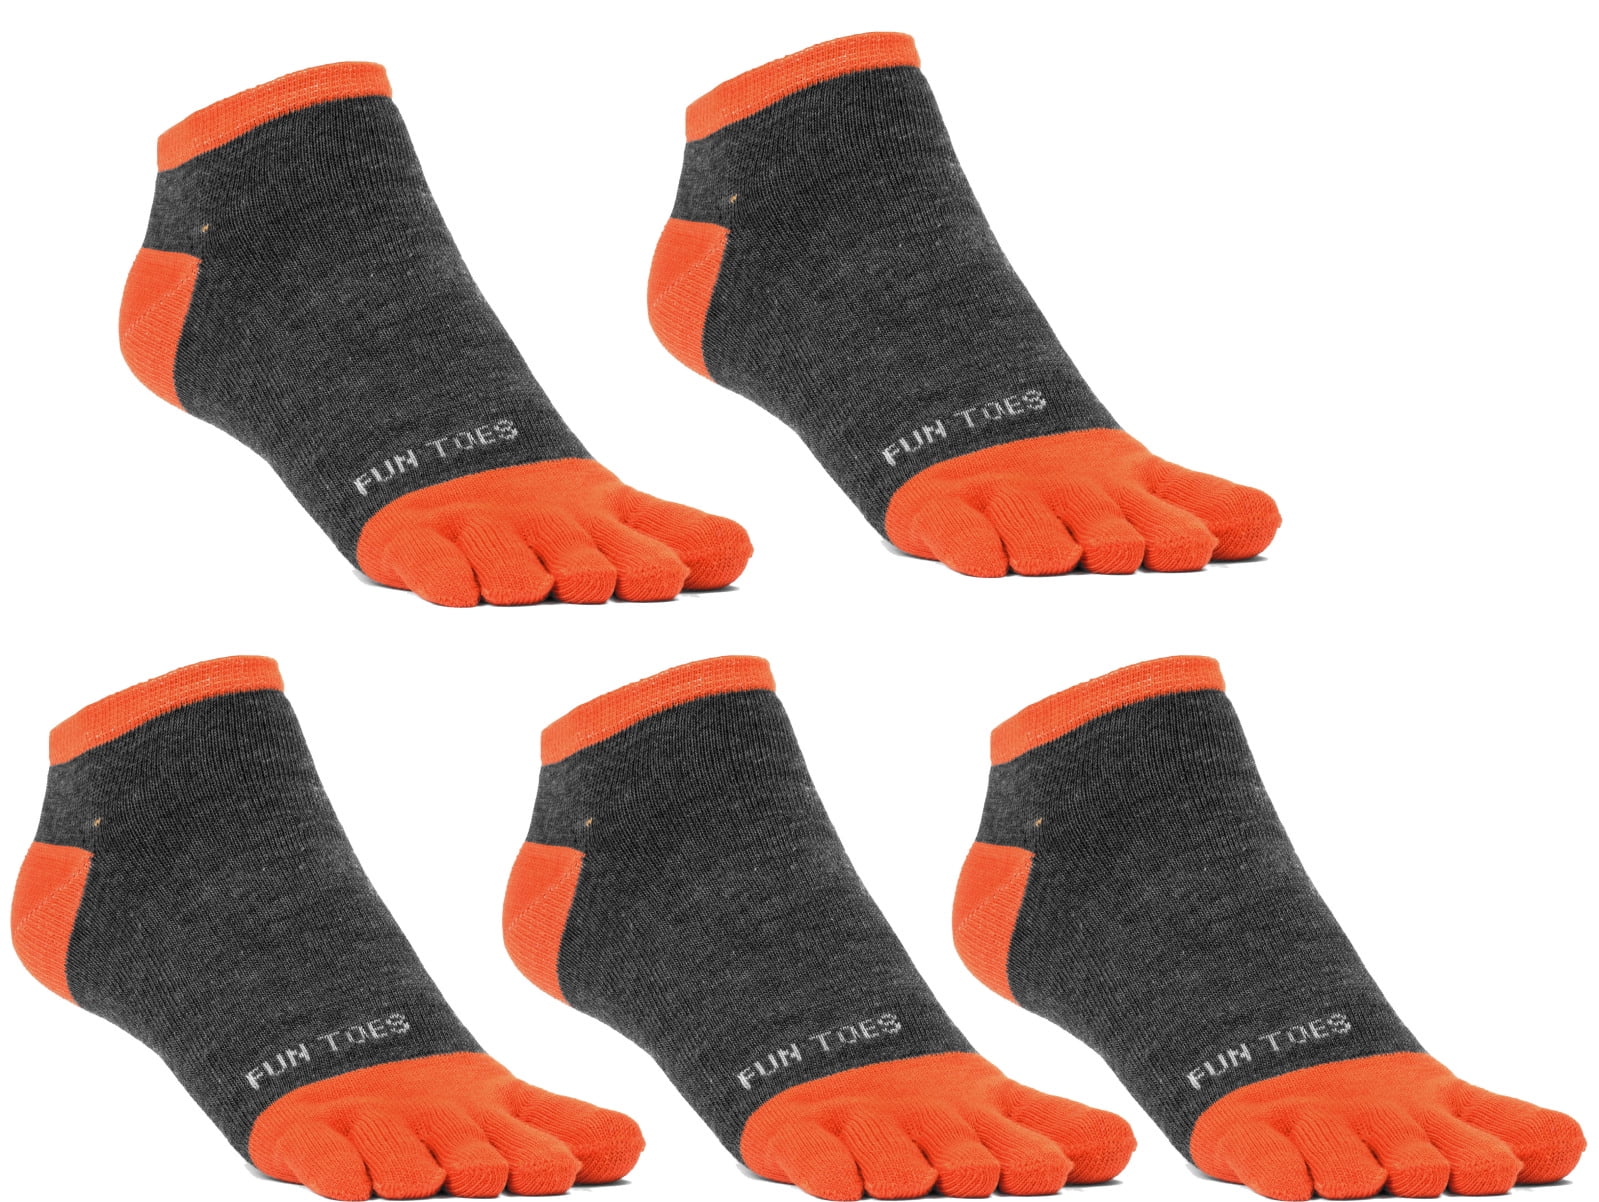 5 toe running socks